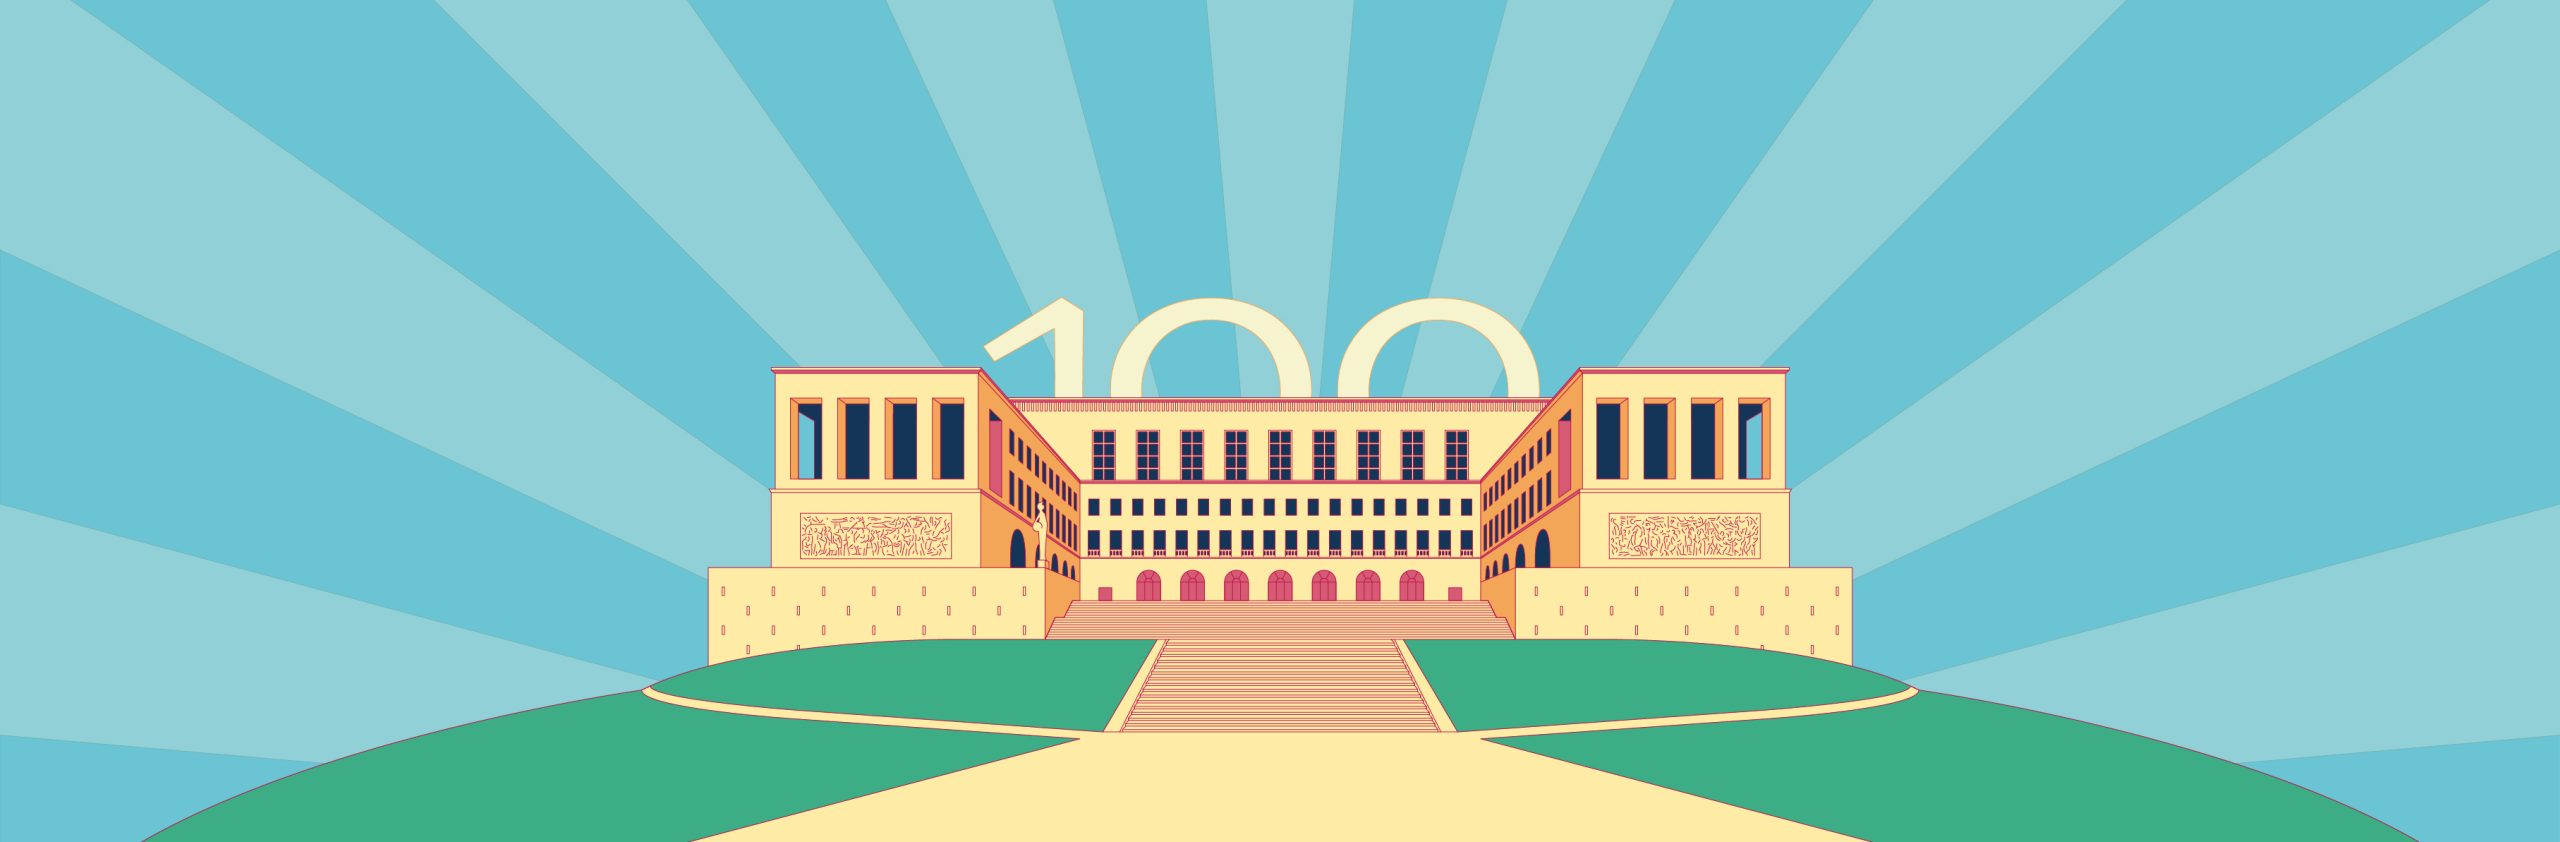 immagine di campagna #100UniTS, illustrazione dell'Ateneo